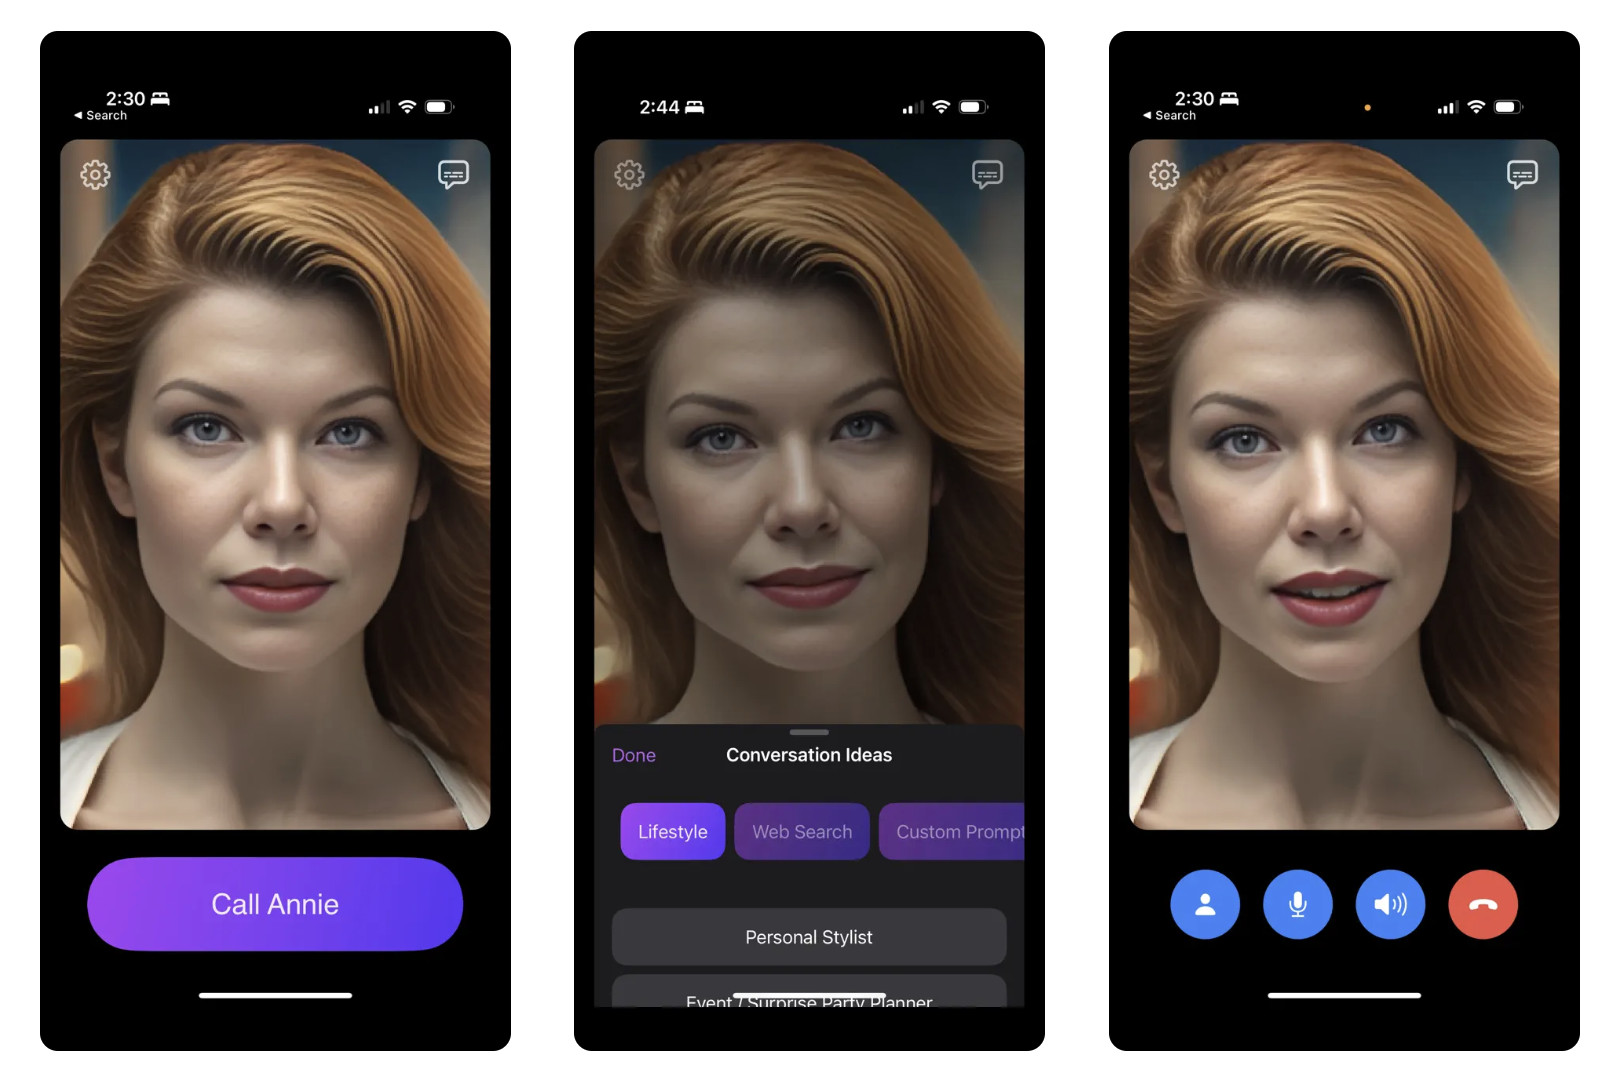 Call Annie: rilasciata l'applicazione per iPhone che consente di parlare con ChatGPT tramite videochiamata